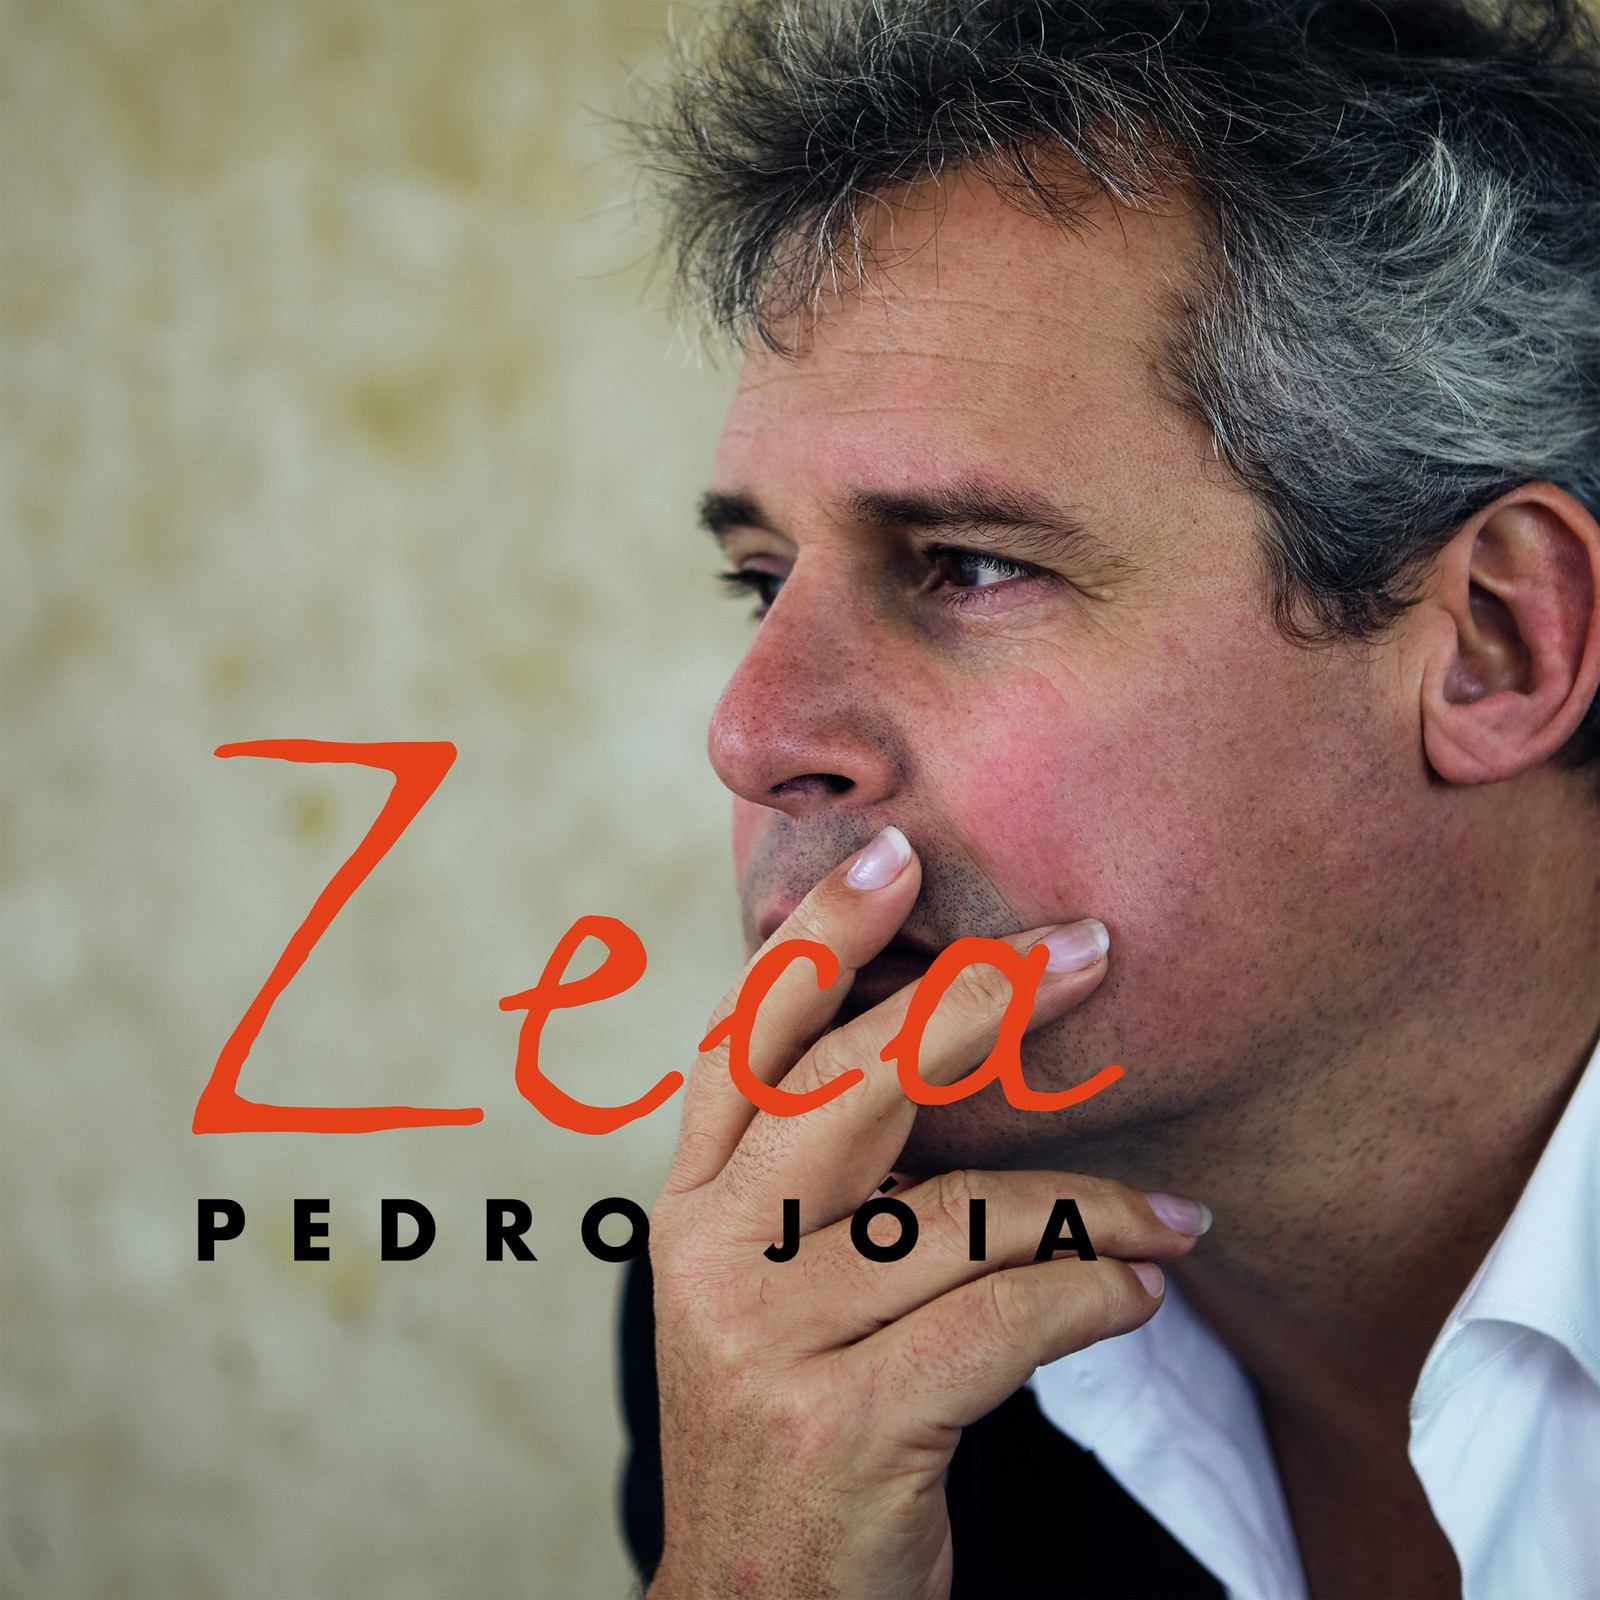 Pedro Jóia é o vencedor da edição 2021 do Prémio Carlos Paredes